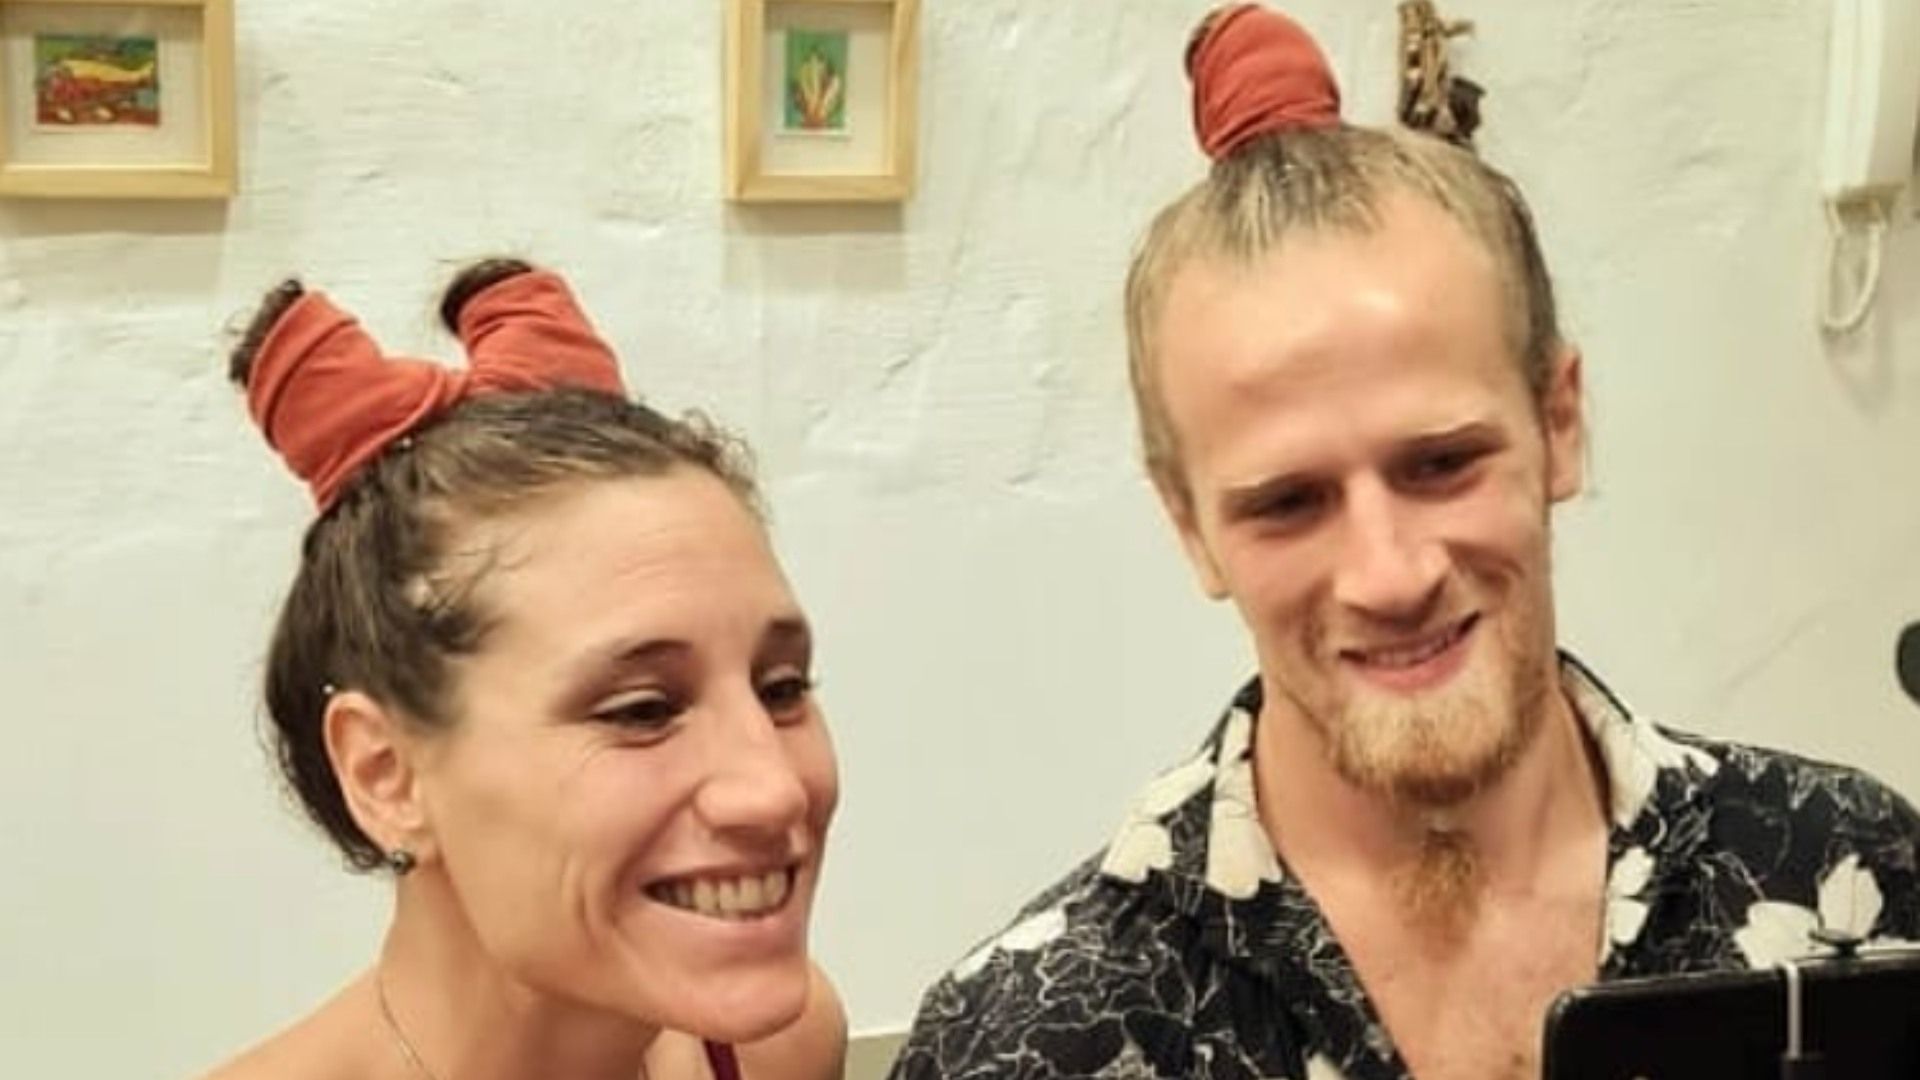 La joven pareja se autodenominaba “ArtDuo” y hacían acrobacias, danza, zanquismo y shows de Hula Hoops, según sus perfiles de Instagram. 